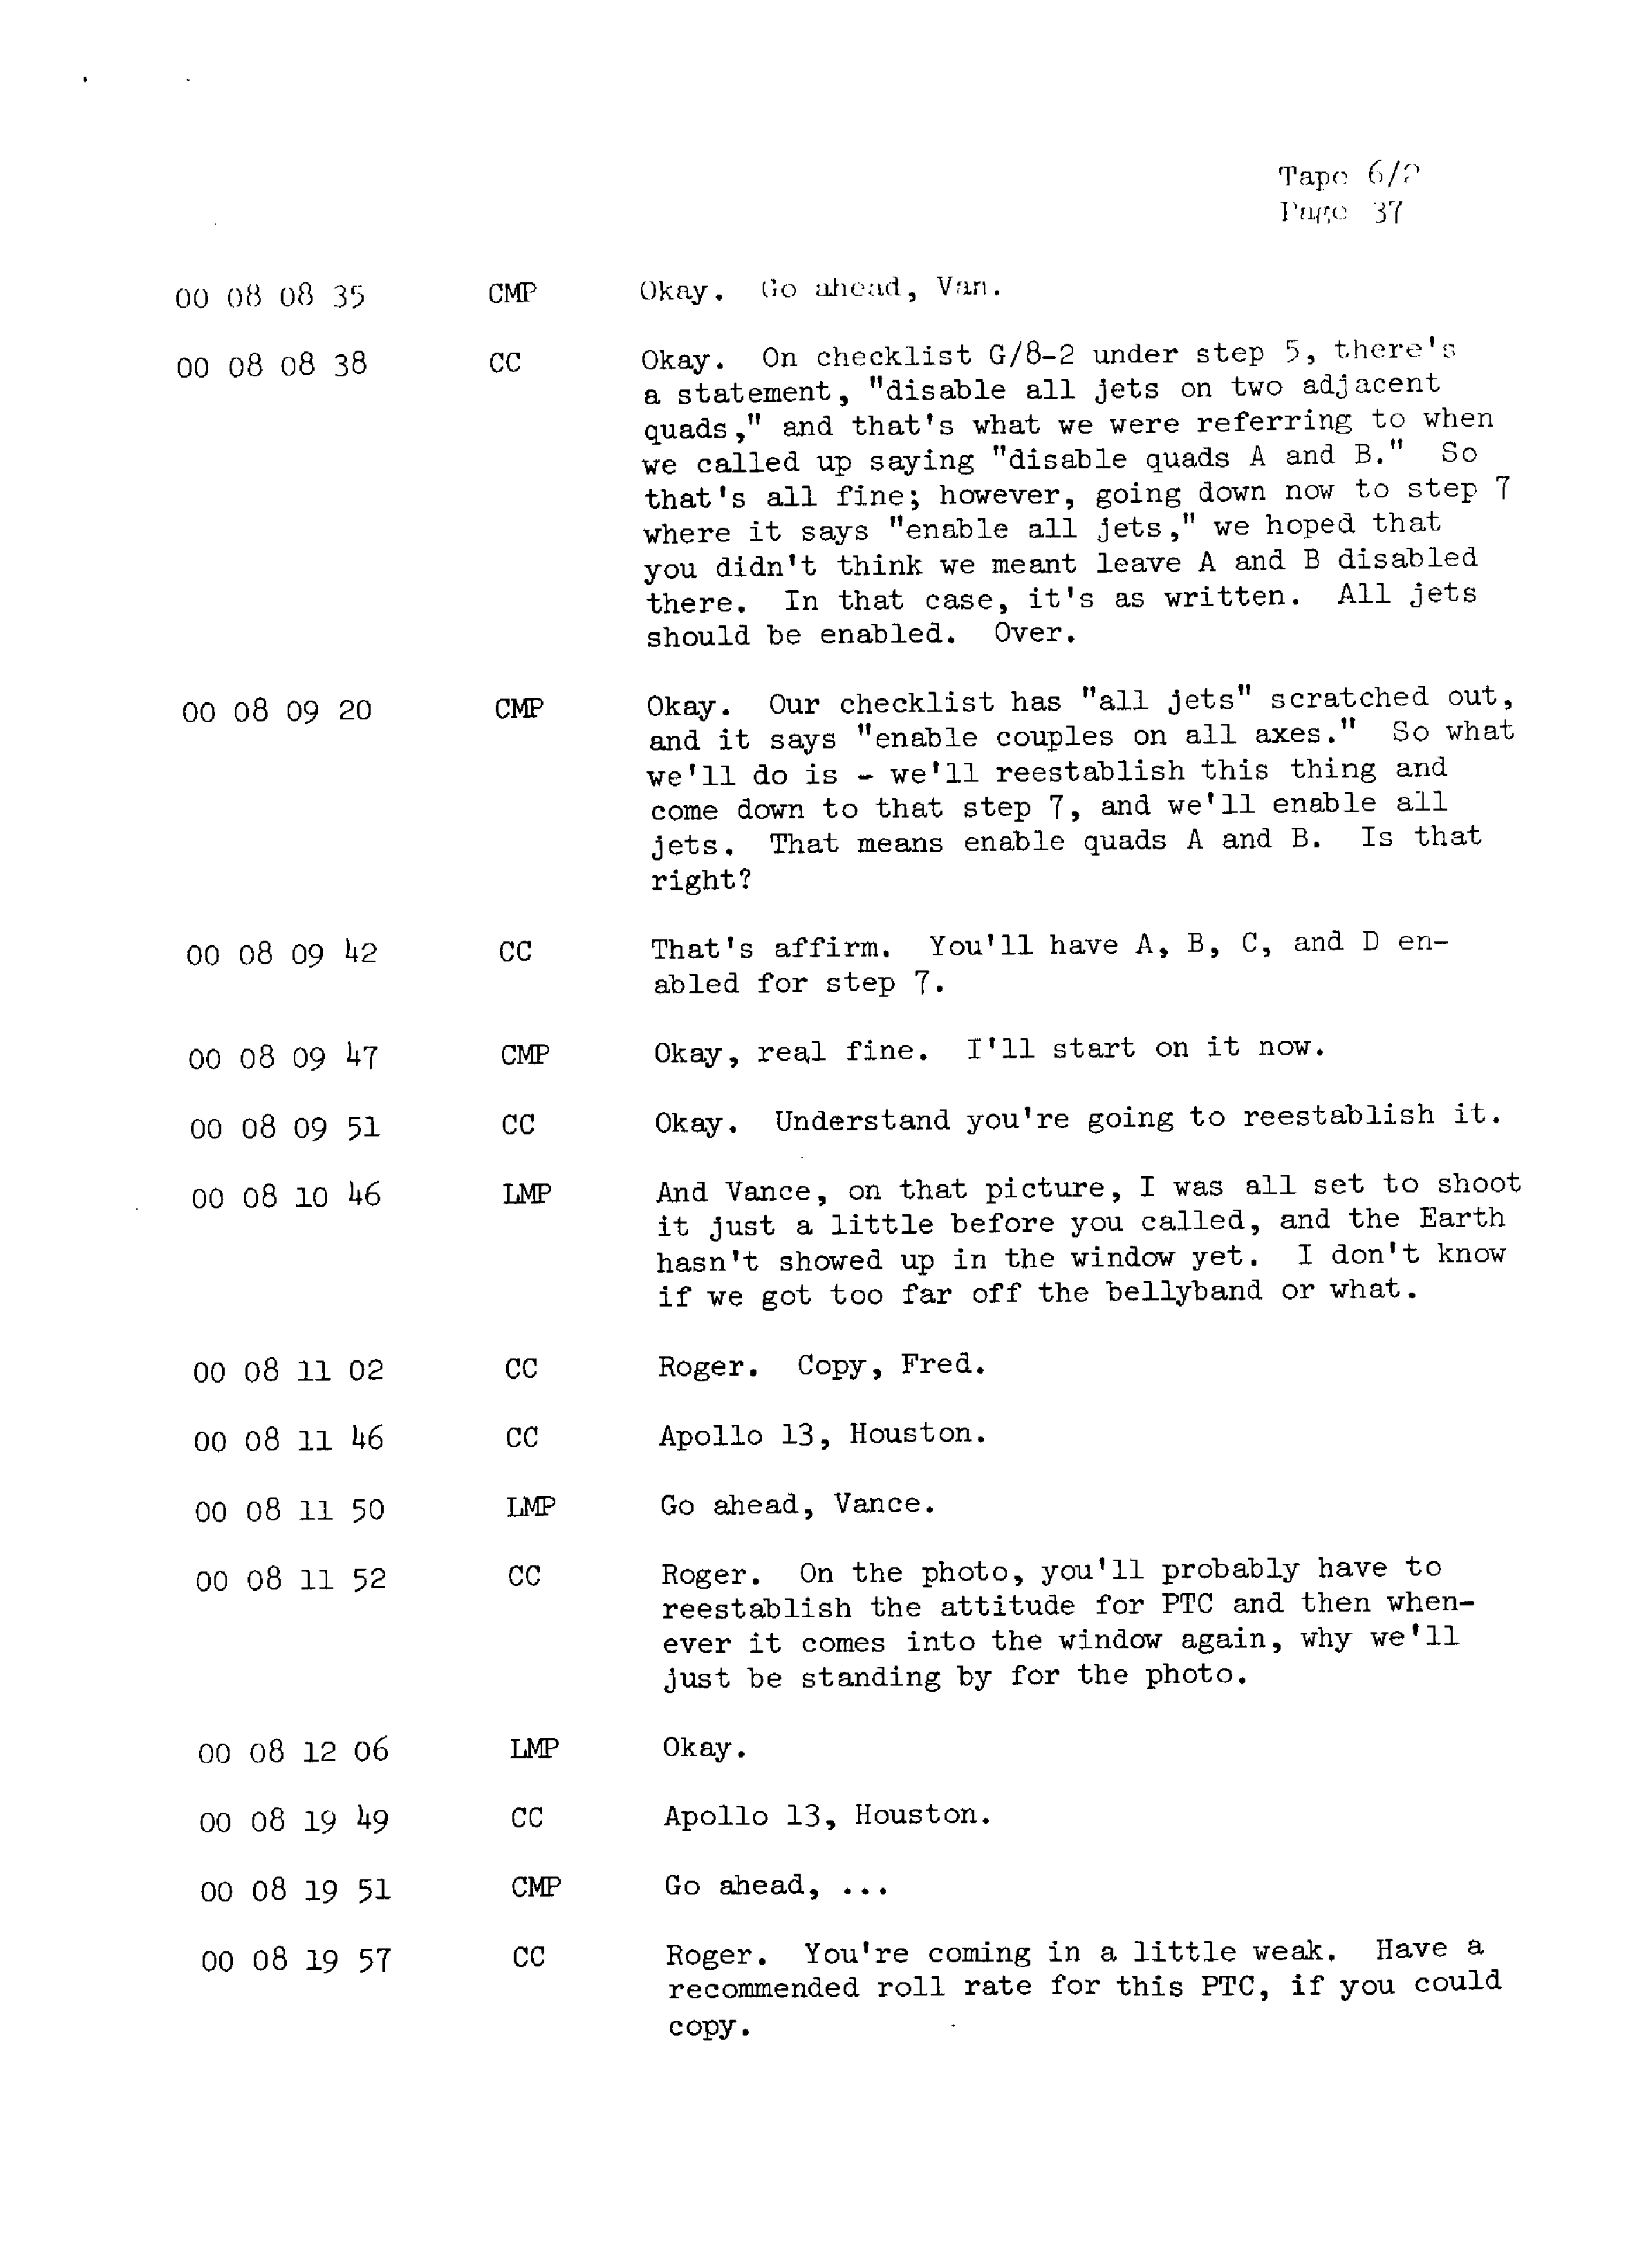 Page 44 of Apollo 13’s original transcript